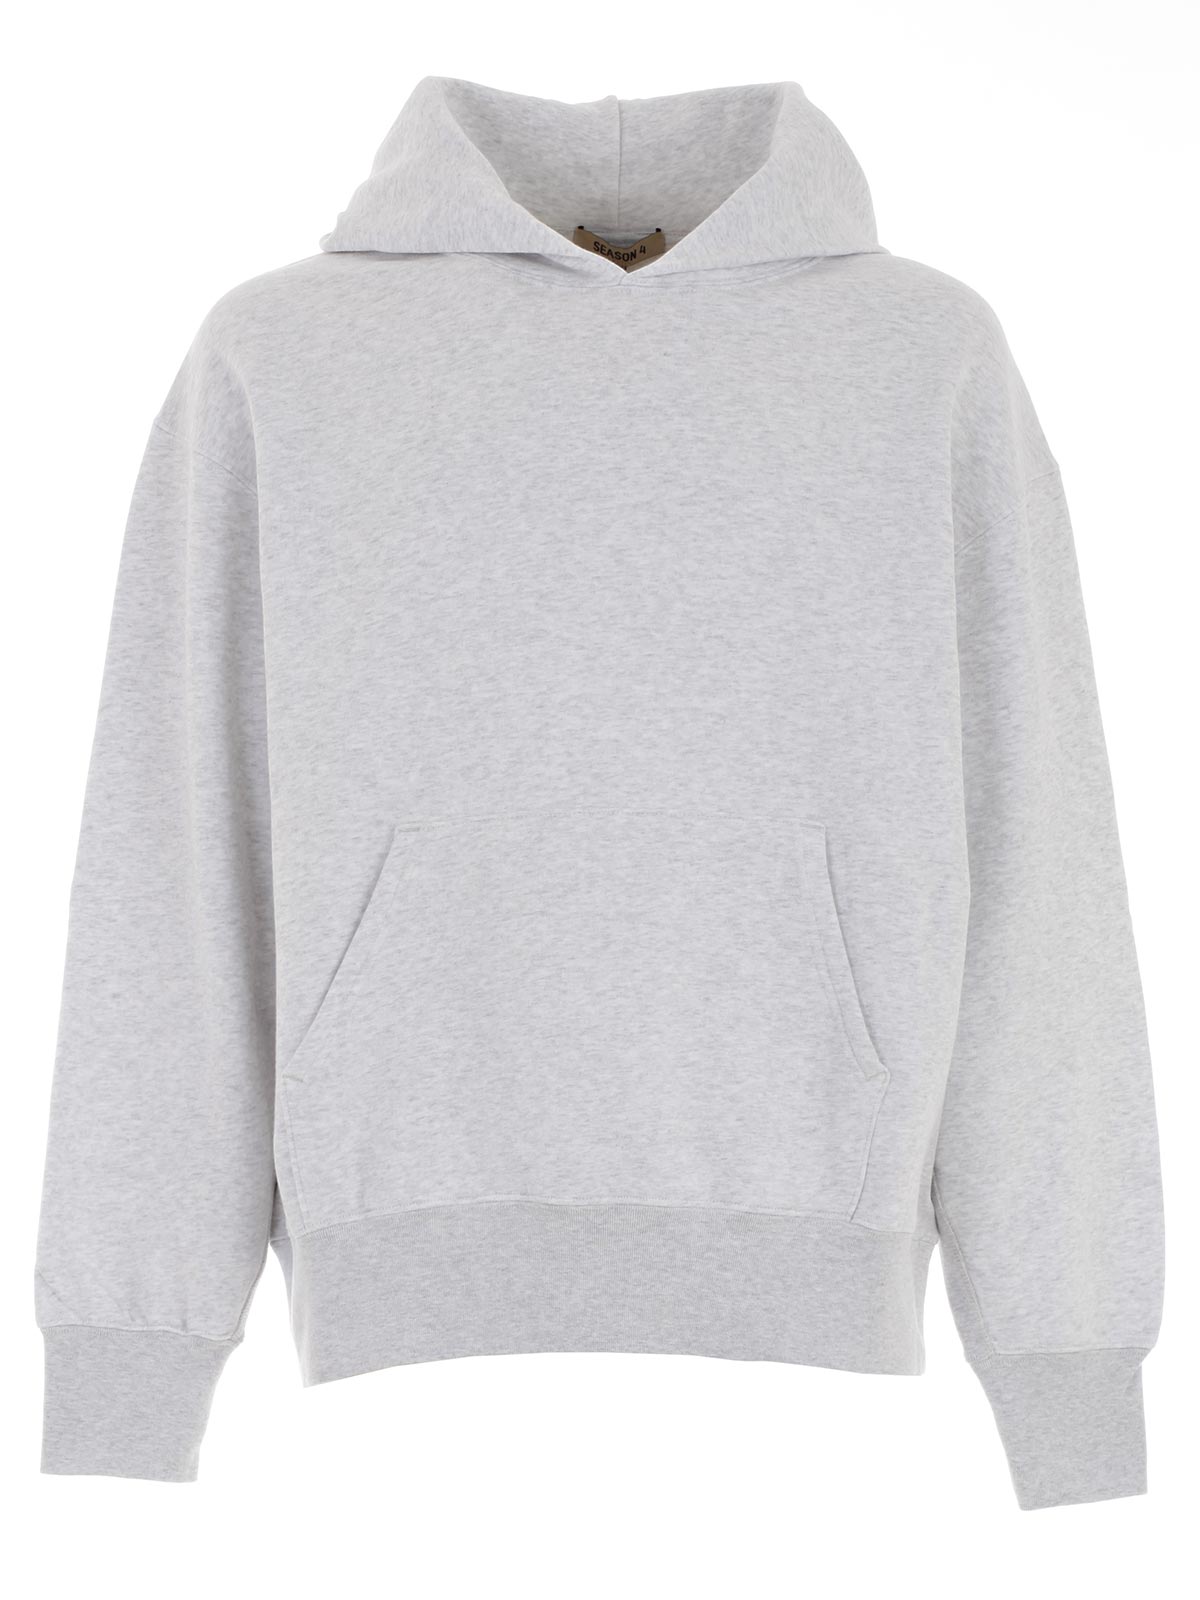 yeezy grey sweatshirt